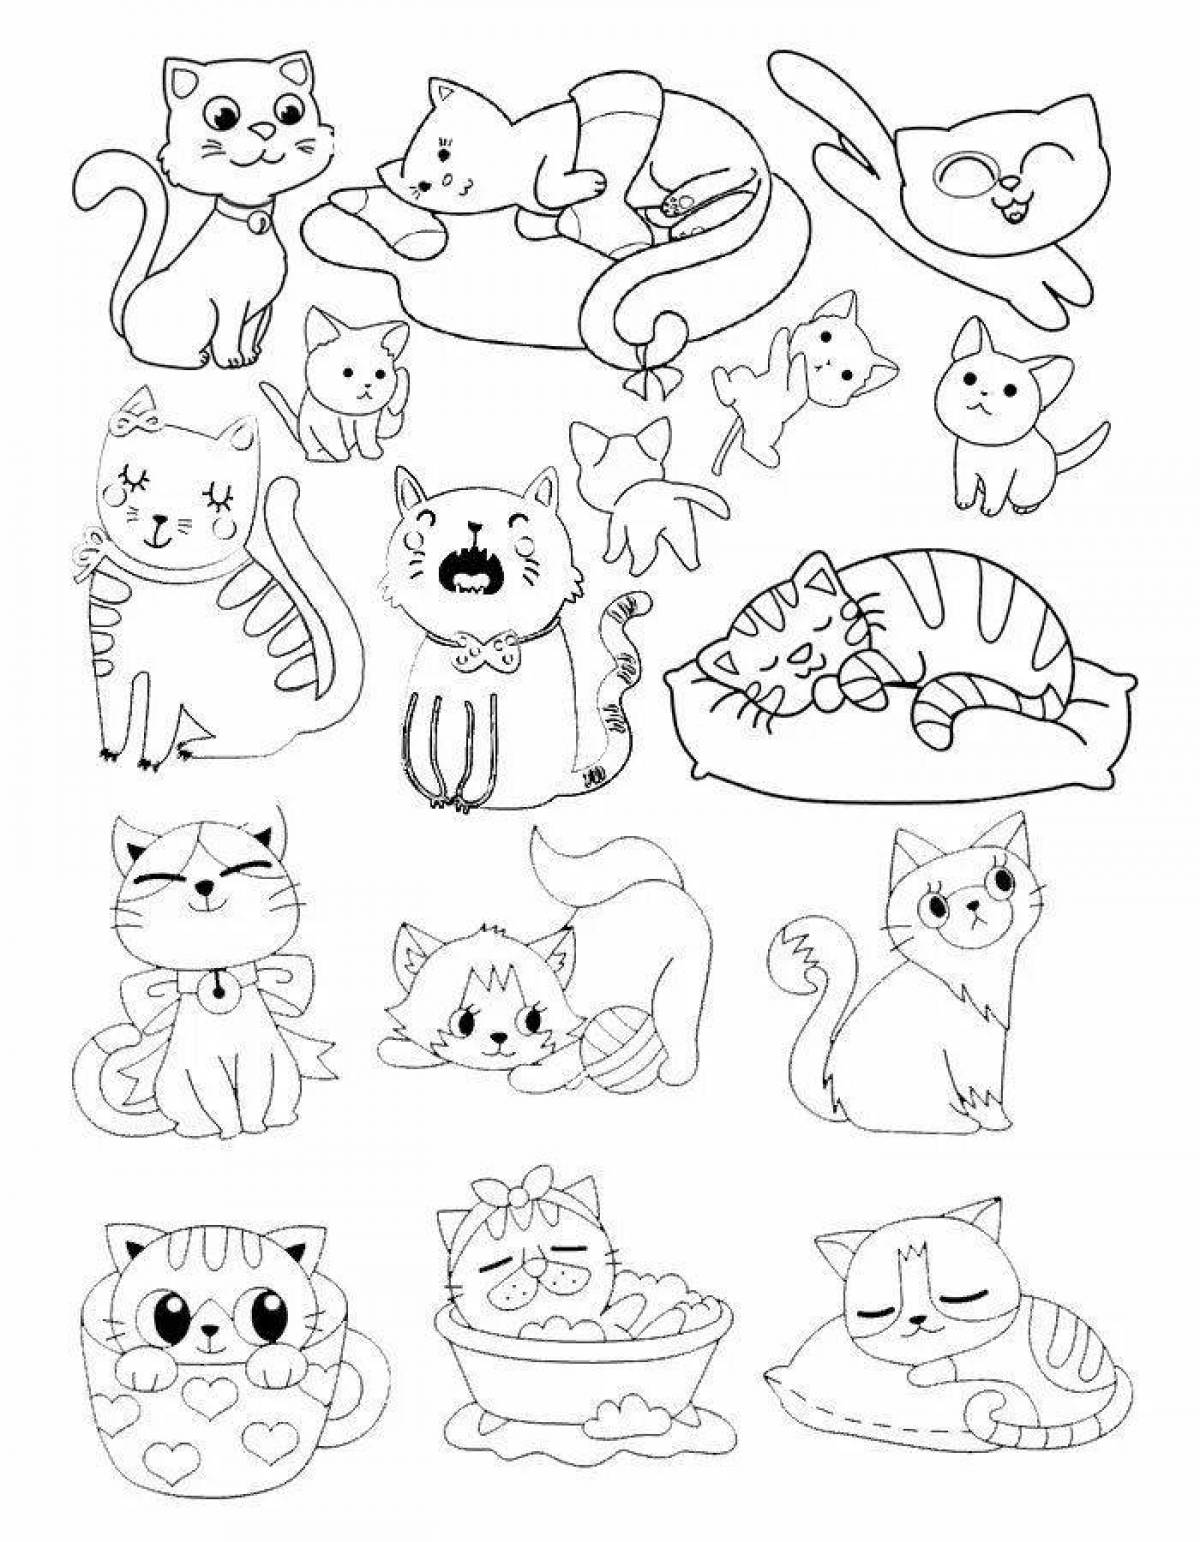 Many cats #3